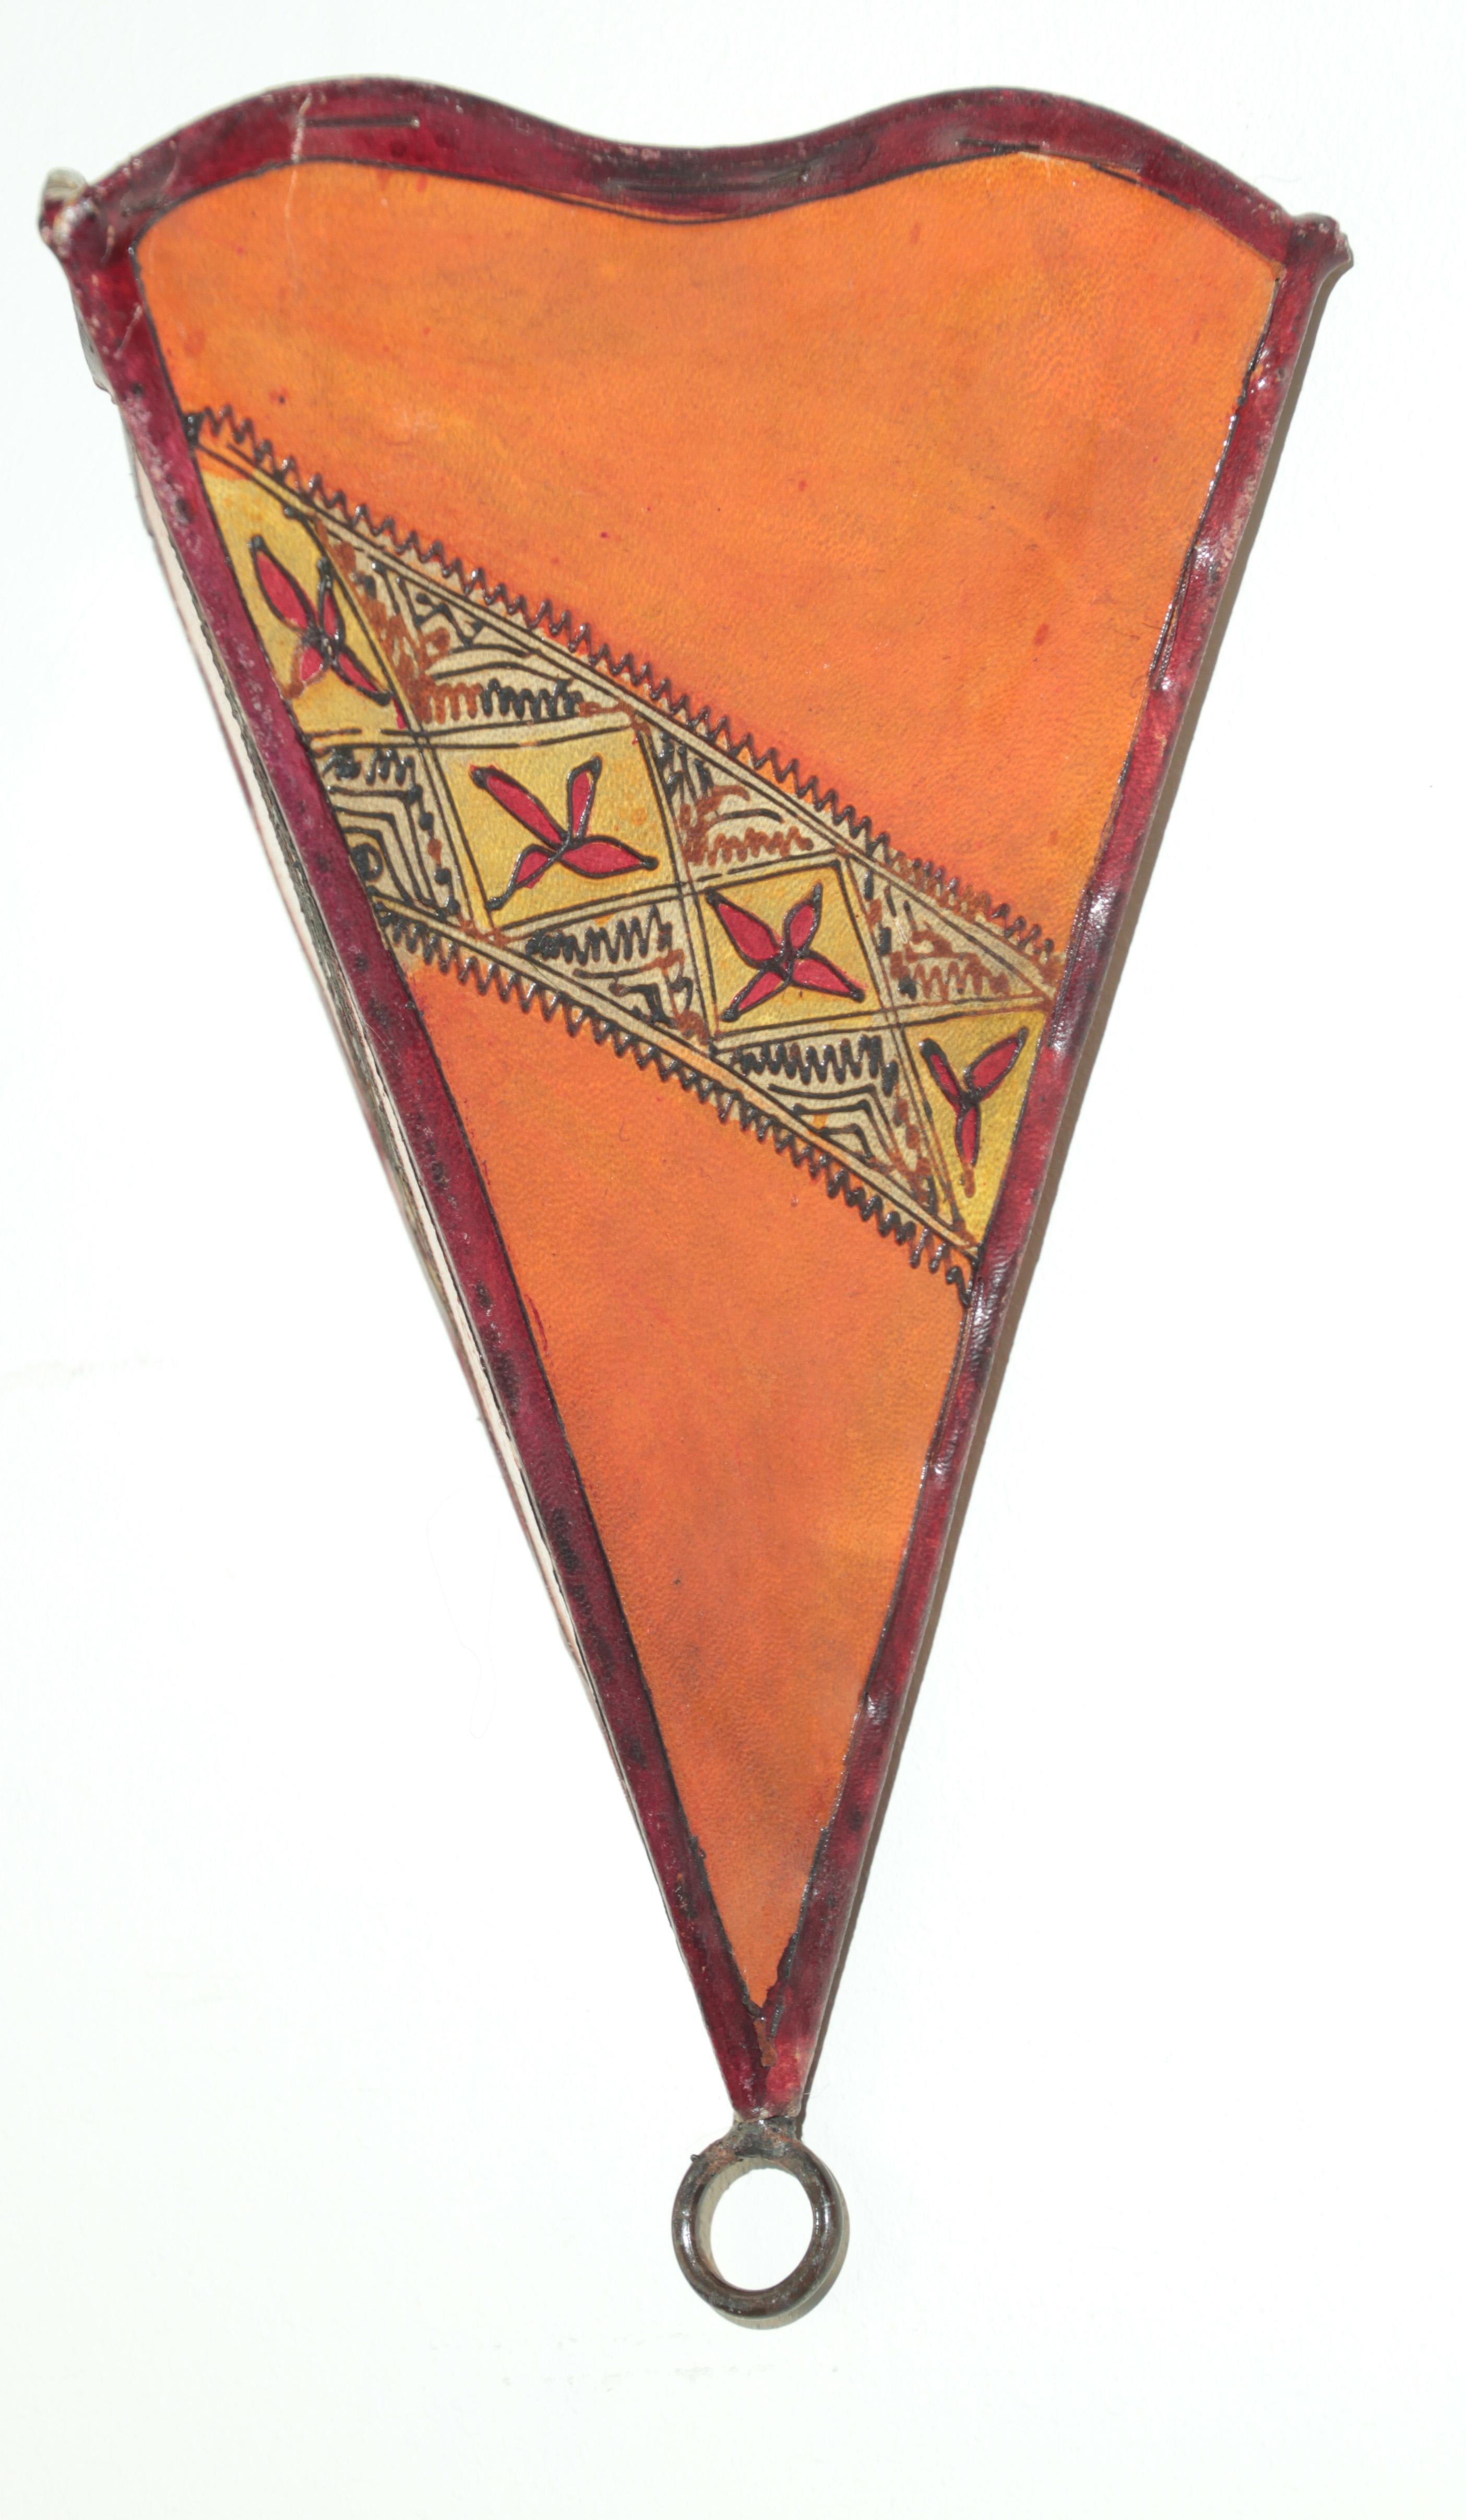 Afrikanische Stammeskunst Pergament Wandleuchte mit einer großen Dreiecksform aus Leder auf Eisen genäht und handbemalt Oberfläche.
Diese marokkanischen Kunstwerke können als Lampenschirm für die Wand verwendet werden.
Der mit Pergament überzogene